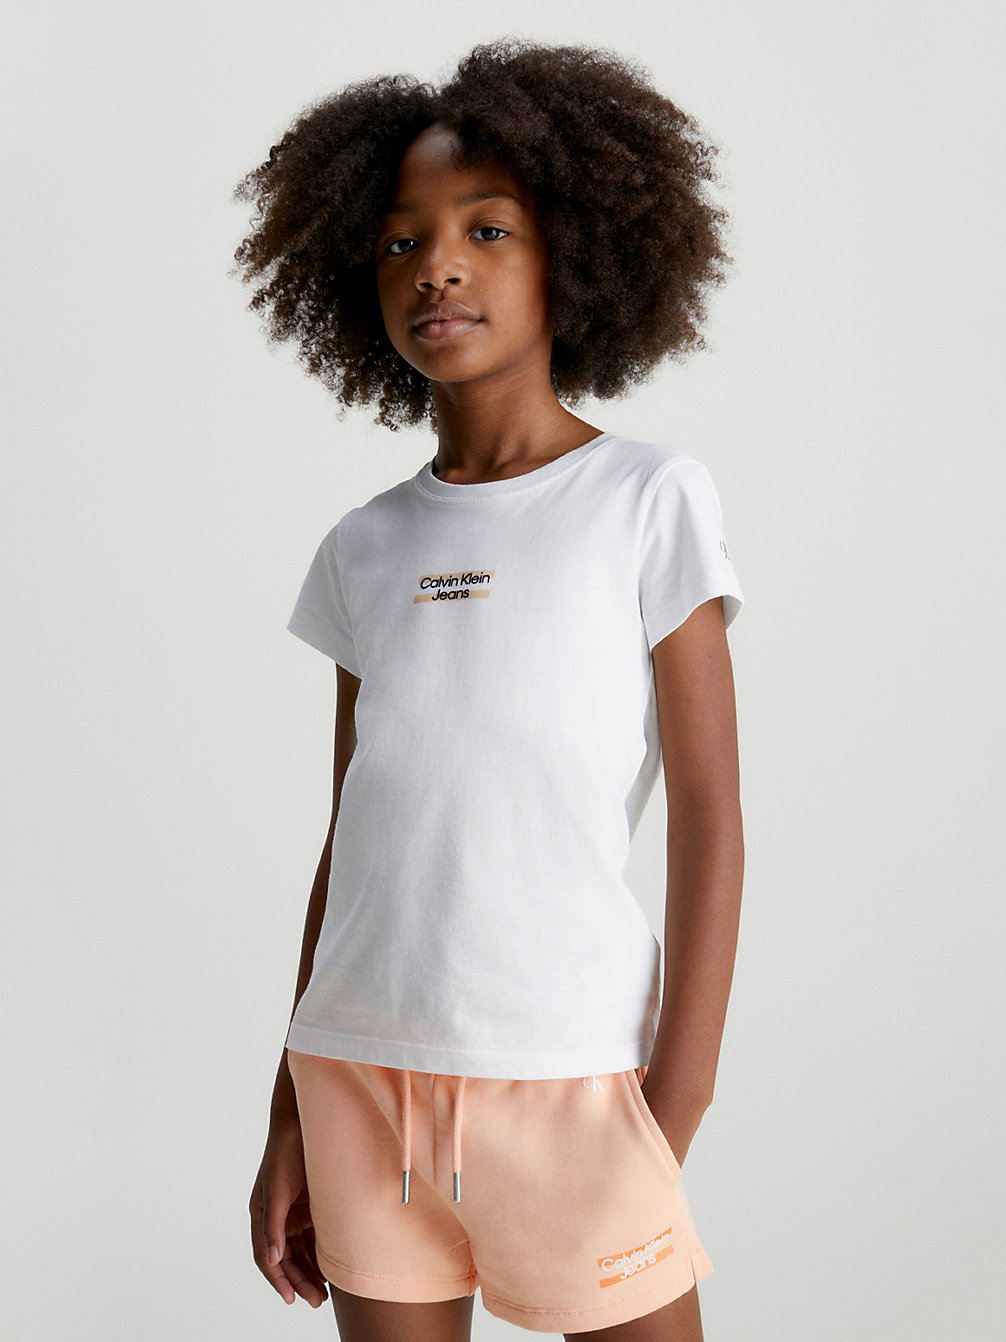 BRIGHT WHITE > Schmales T-Shirt Aus Bio-Baumwolle > undefined girls - Calvin Klein